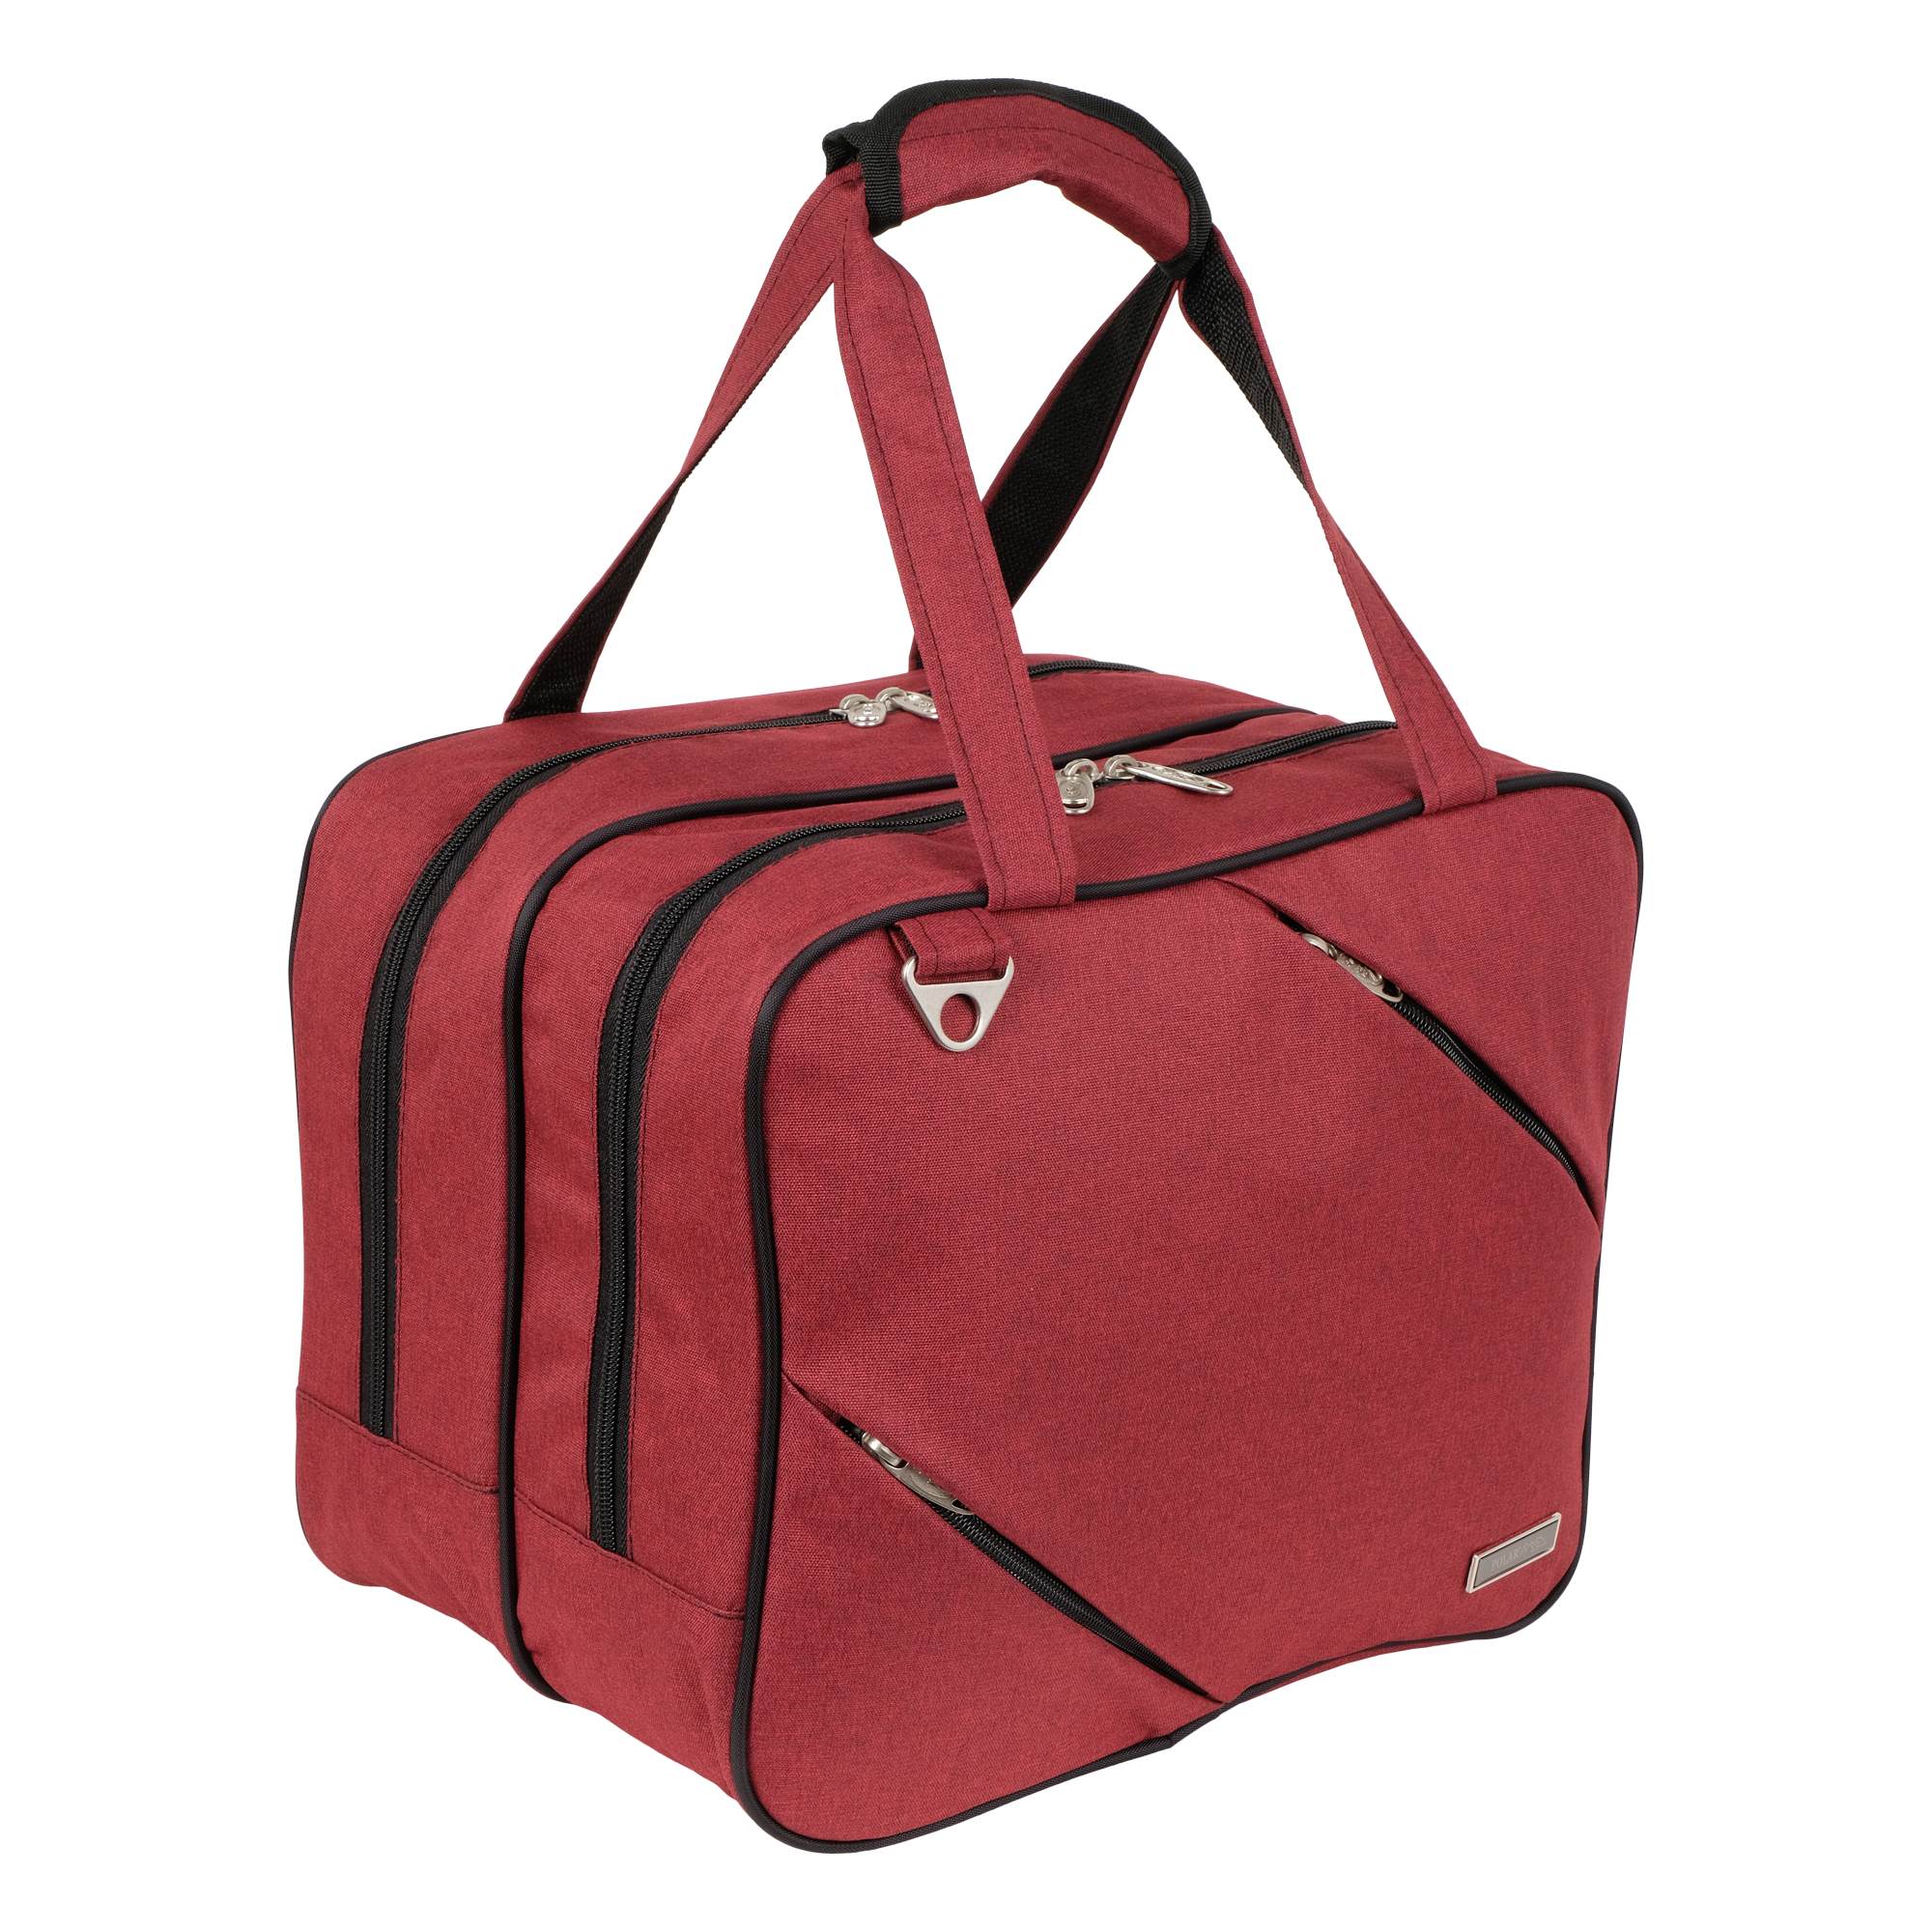 Дорожная сумка мужская П7122 бордовая, 30x36x25 см Polar. Цвет: красный